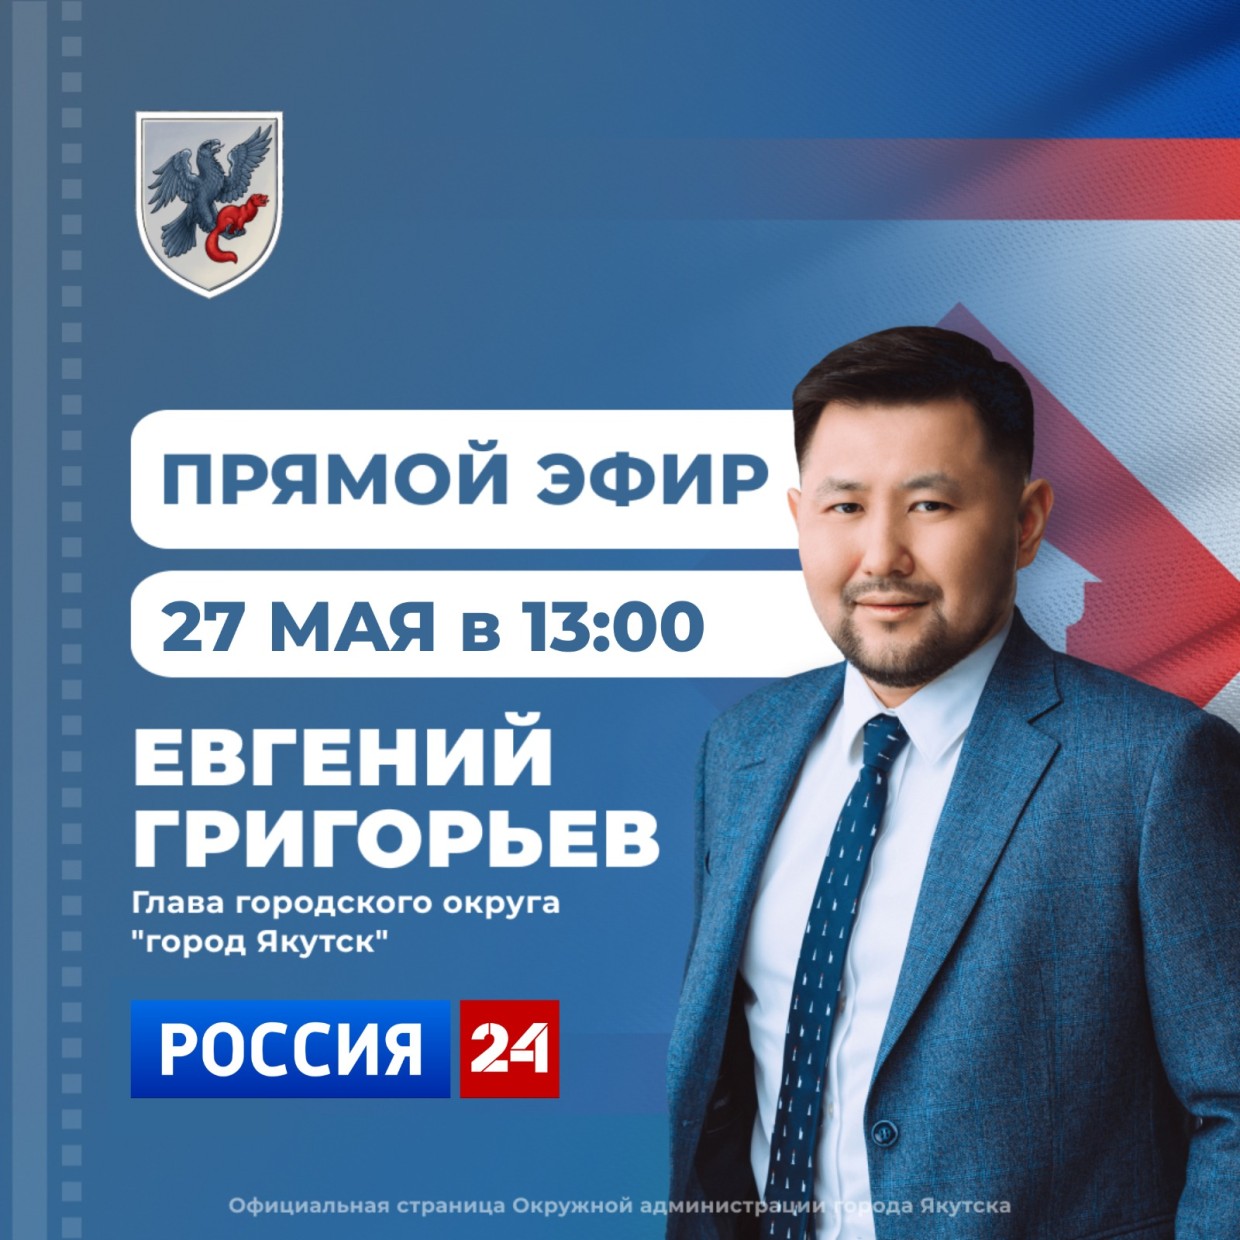 Евгений Григорьев 27 мая примет участие в программе «Прямой эфир с городом» на телеканале «Россия 24»